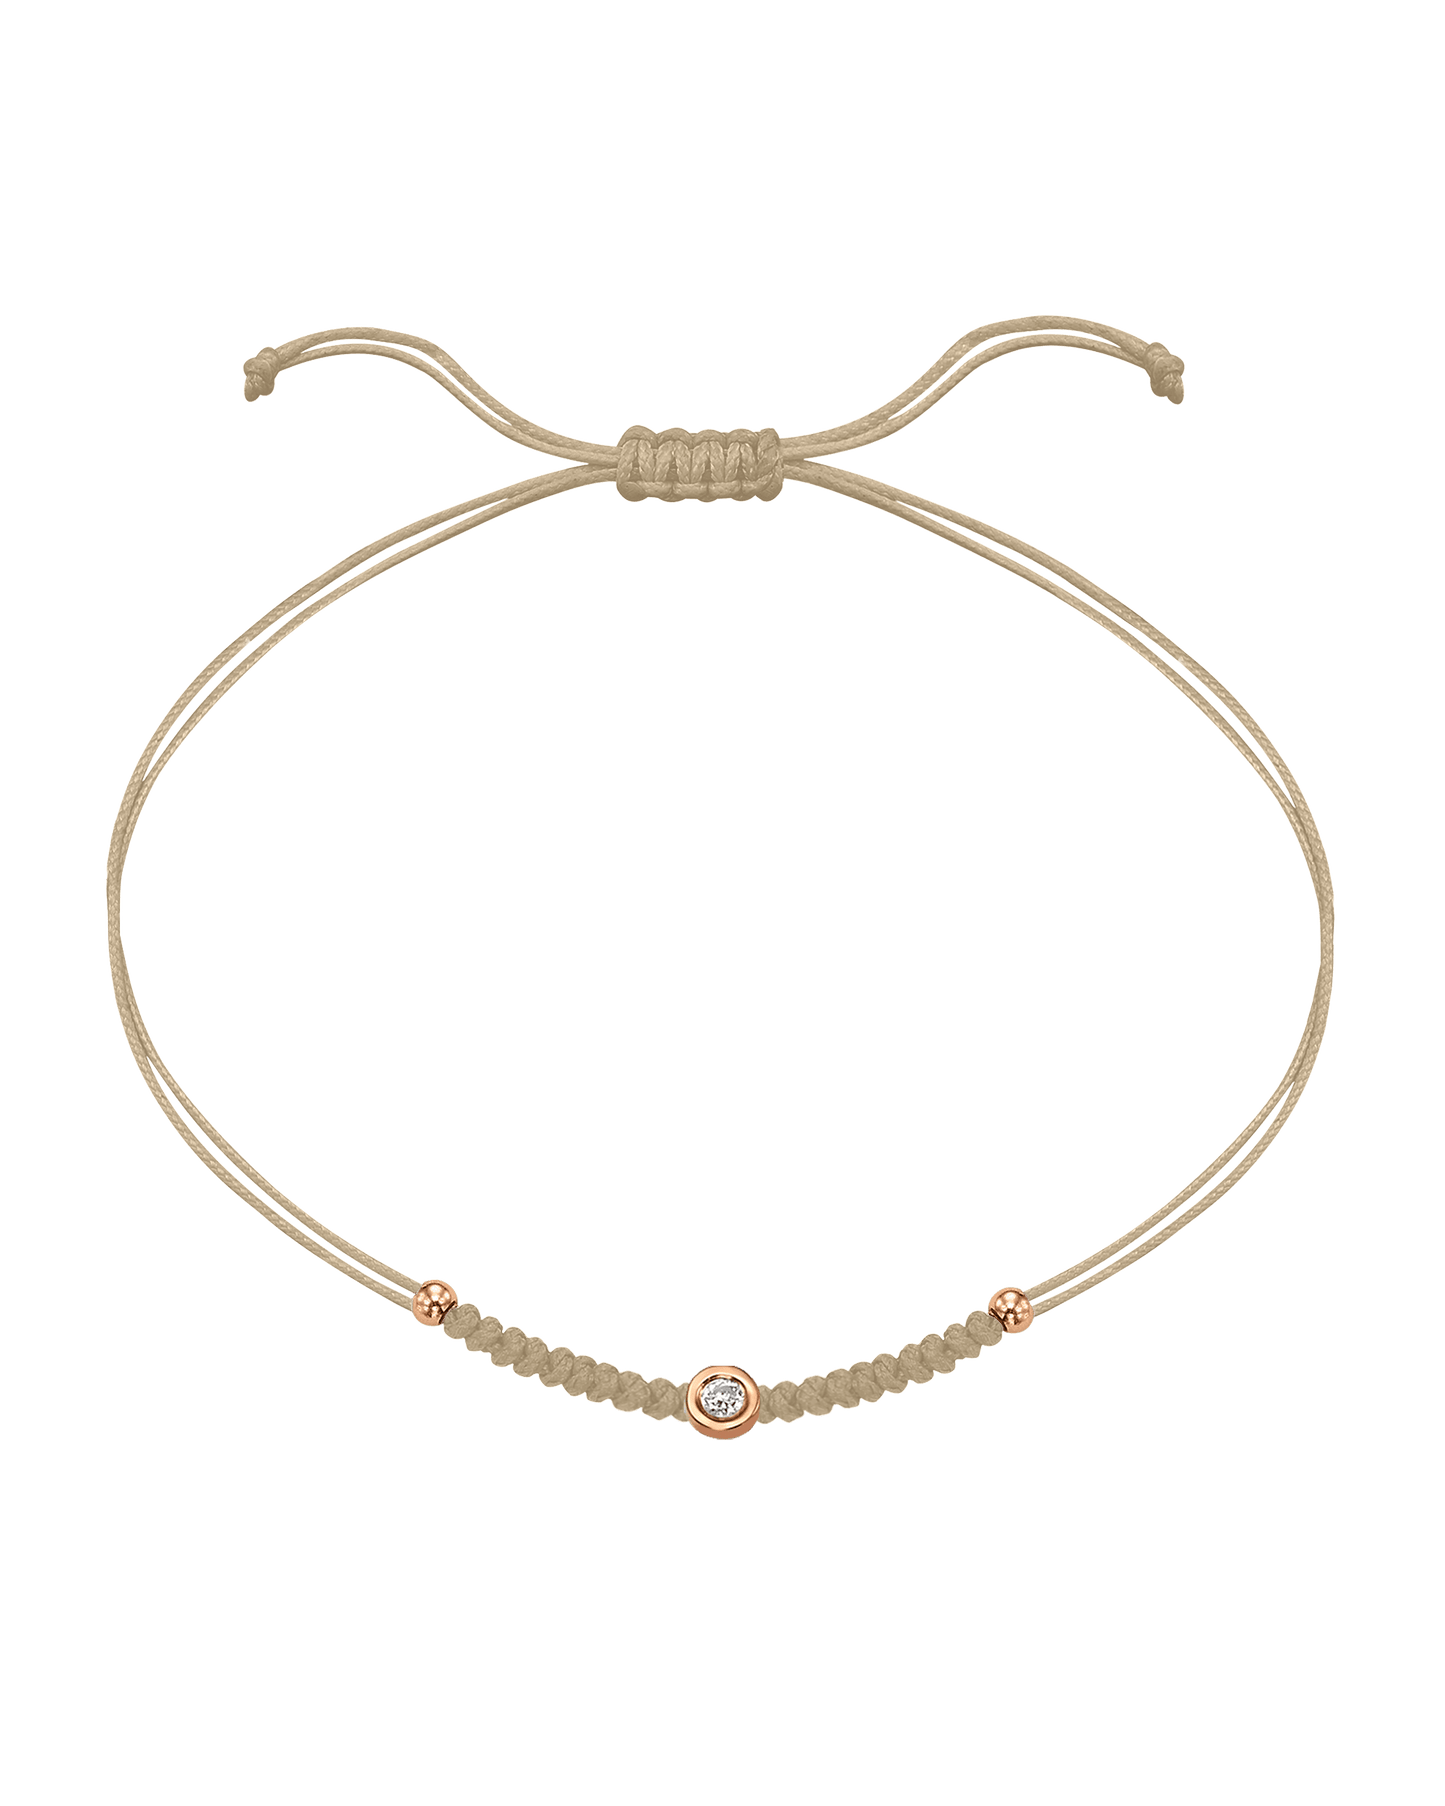 Solid Gold Sphere String of Love - 14K Rose Gold Bracelet 14K Solid Gold Beige Small: 0.03ct 